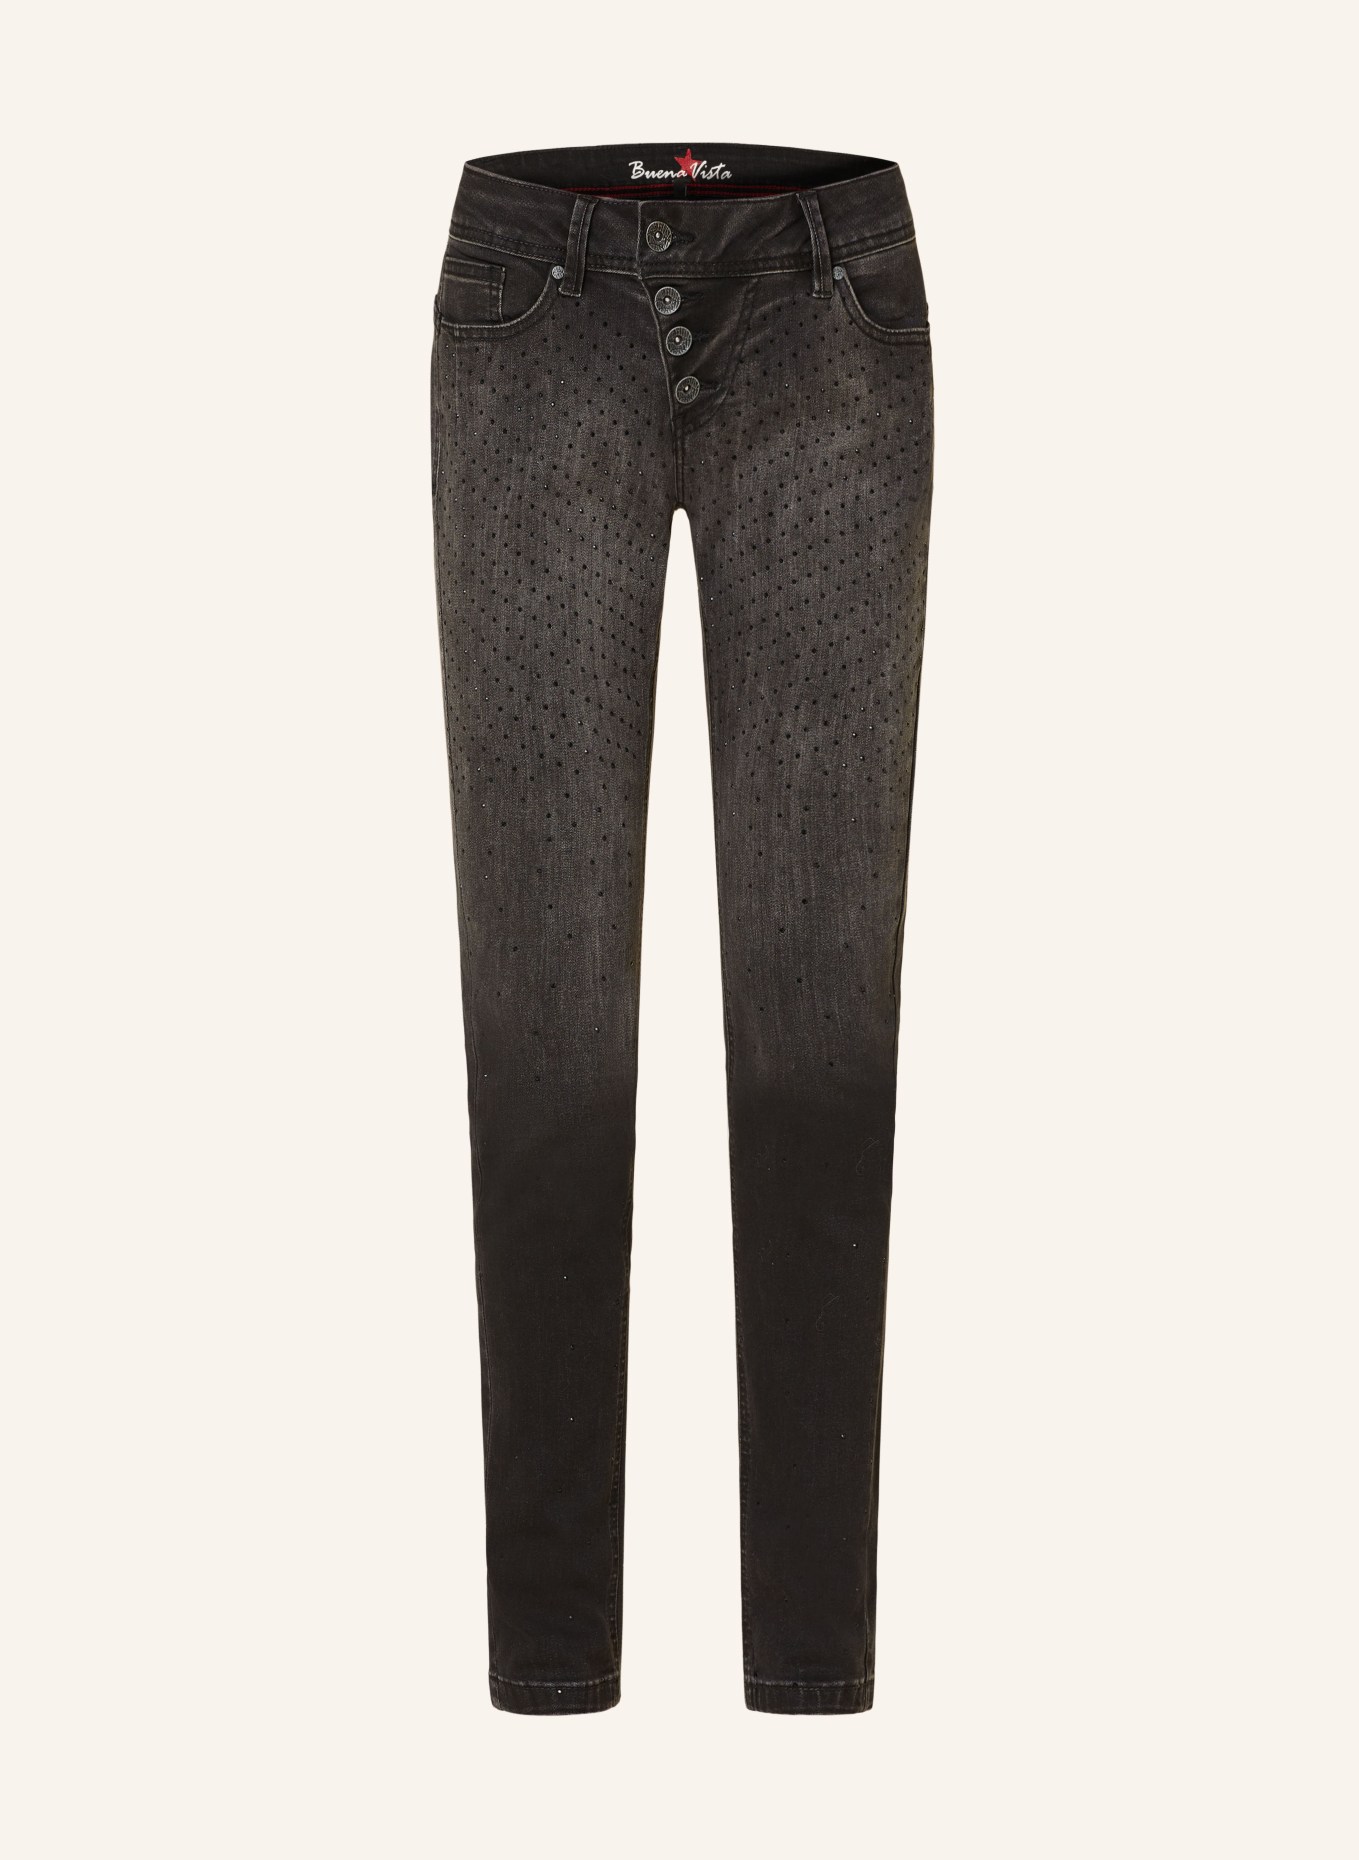 Buena Vista Jeans MALIBU mit Schmucksteinen, Farbe: 9220 black sparkling (Bild 1)